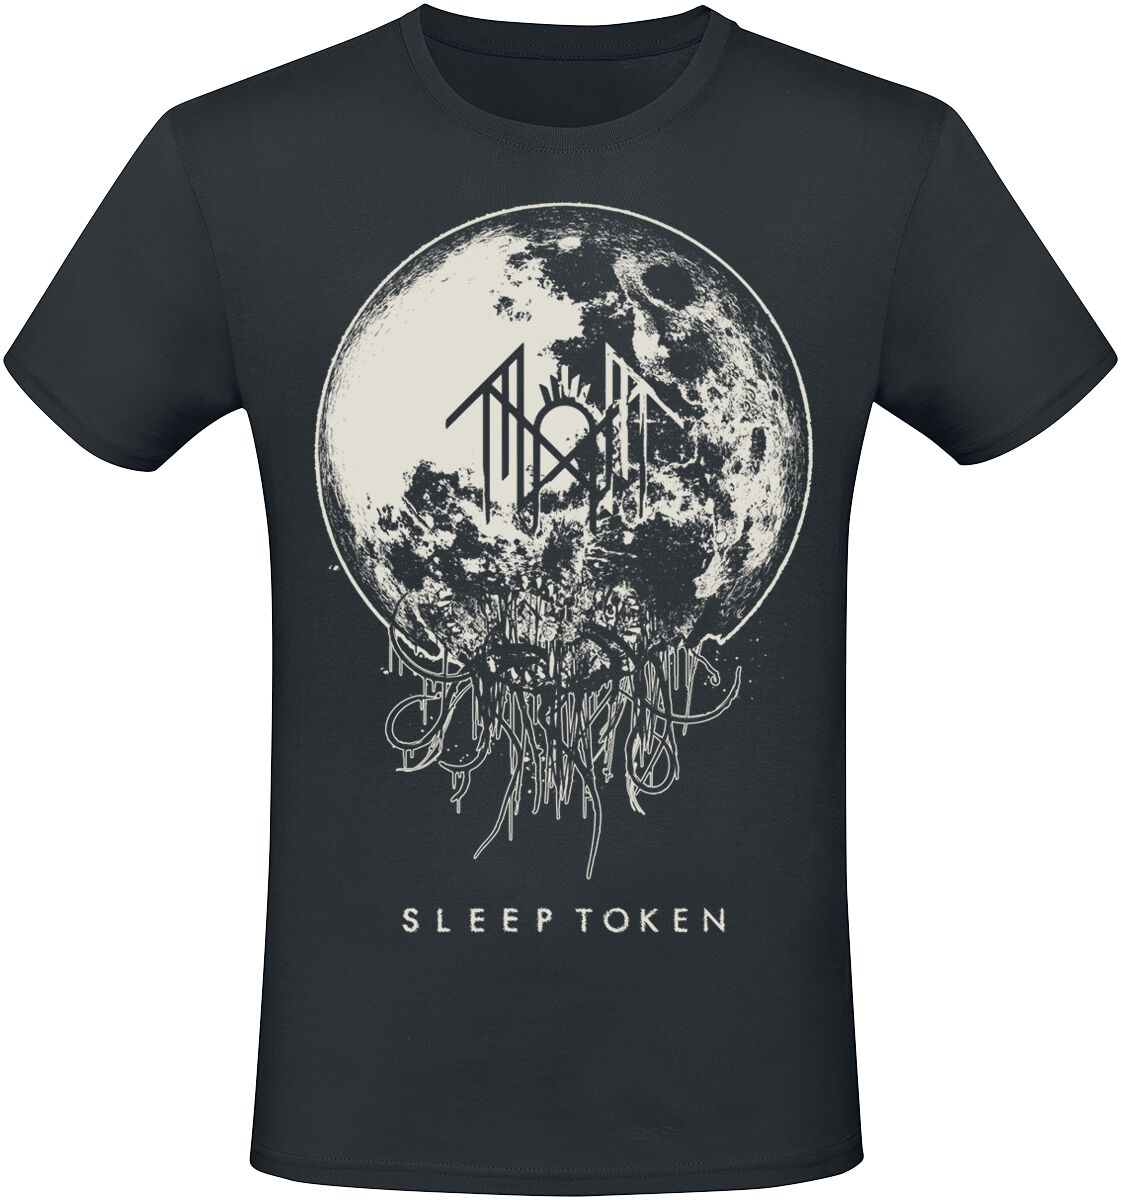 Sleep Token T-Shirt - Take Me Back To Eden - S bis 4XL - für Männer - Größe XXL - schwarz  - EMP exklusives Merchandise!